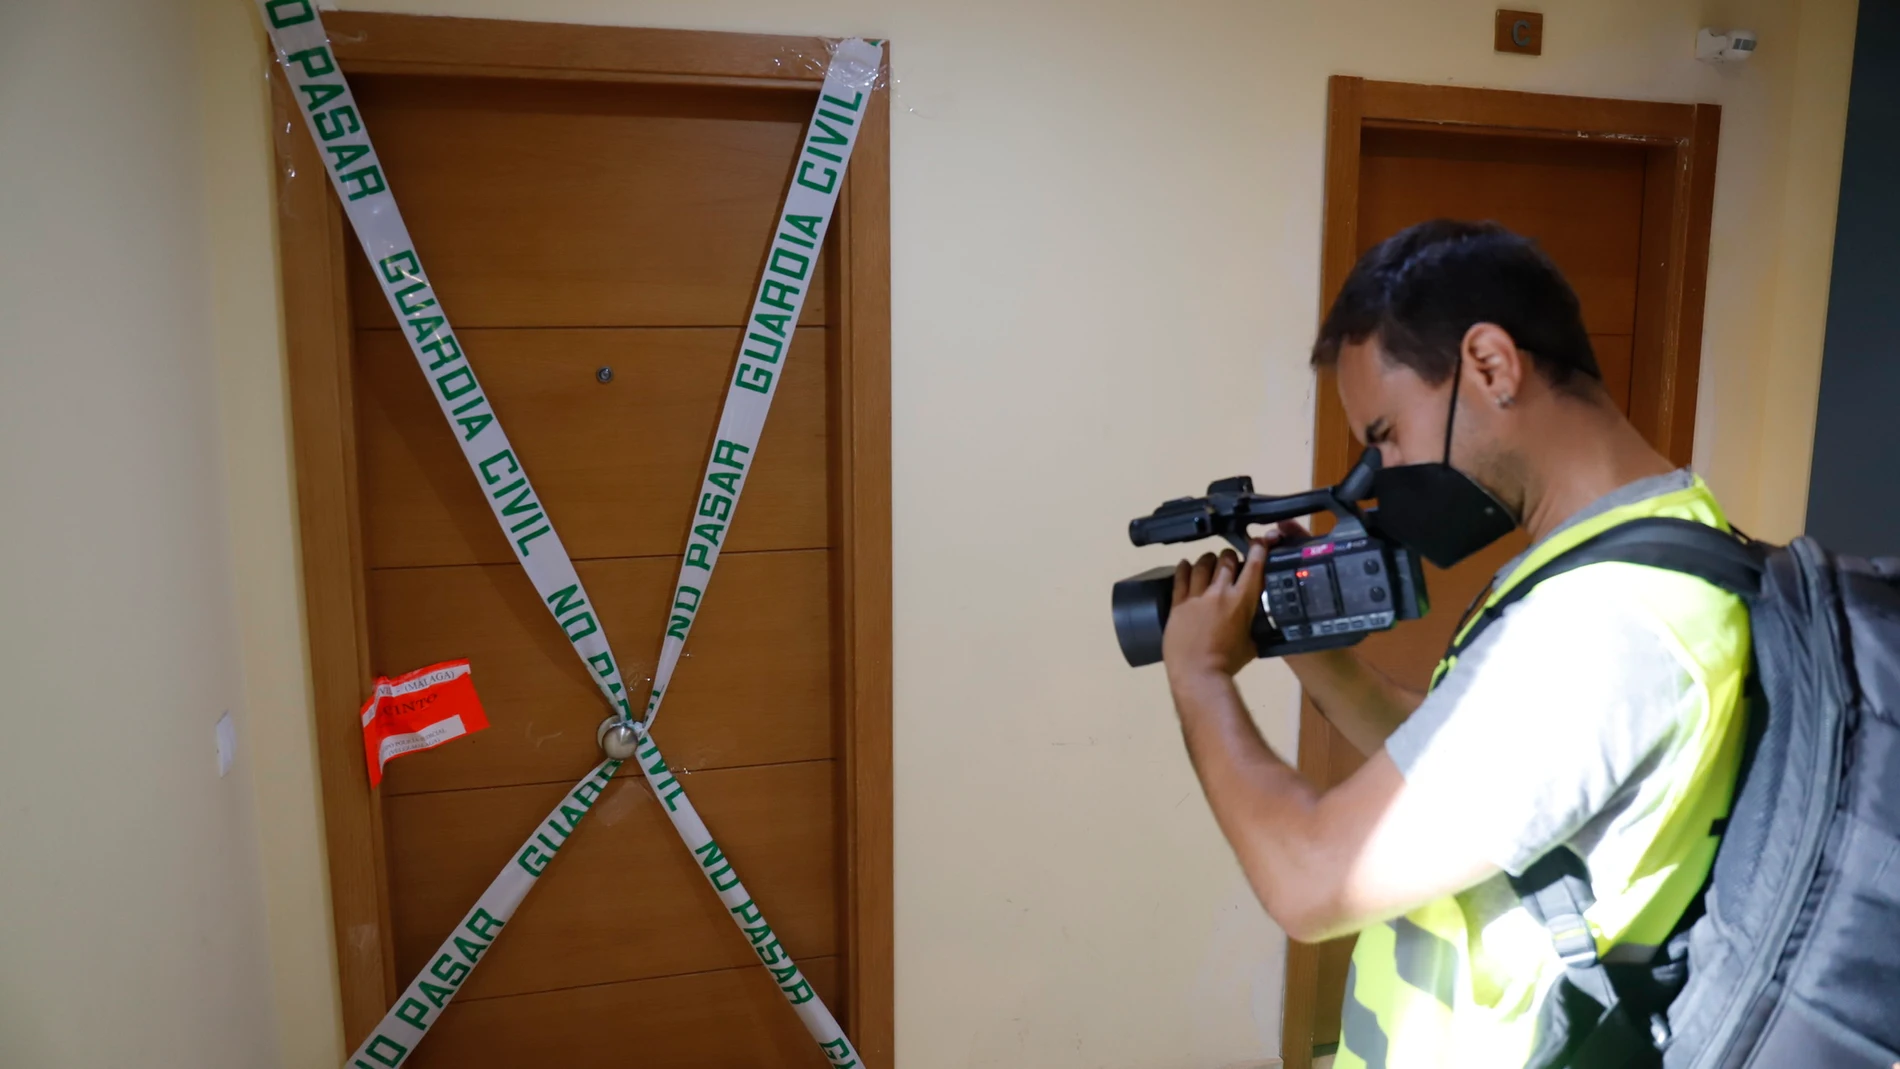 Un cámara toma imágenes de la puerta del domicilio donde presuntamente ocurrió el crimen, en Rincón de la Victoria. Álex Zea / Europa Press